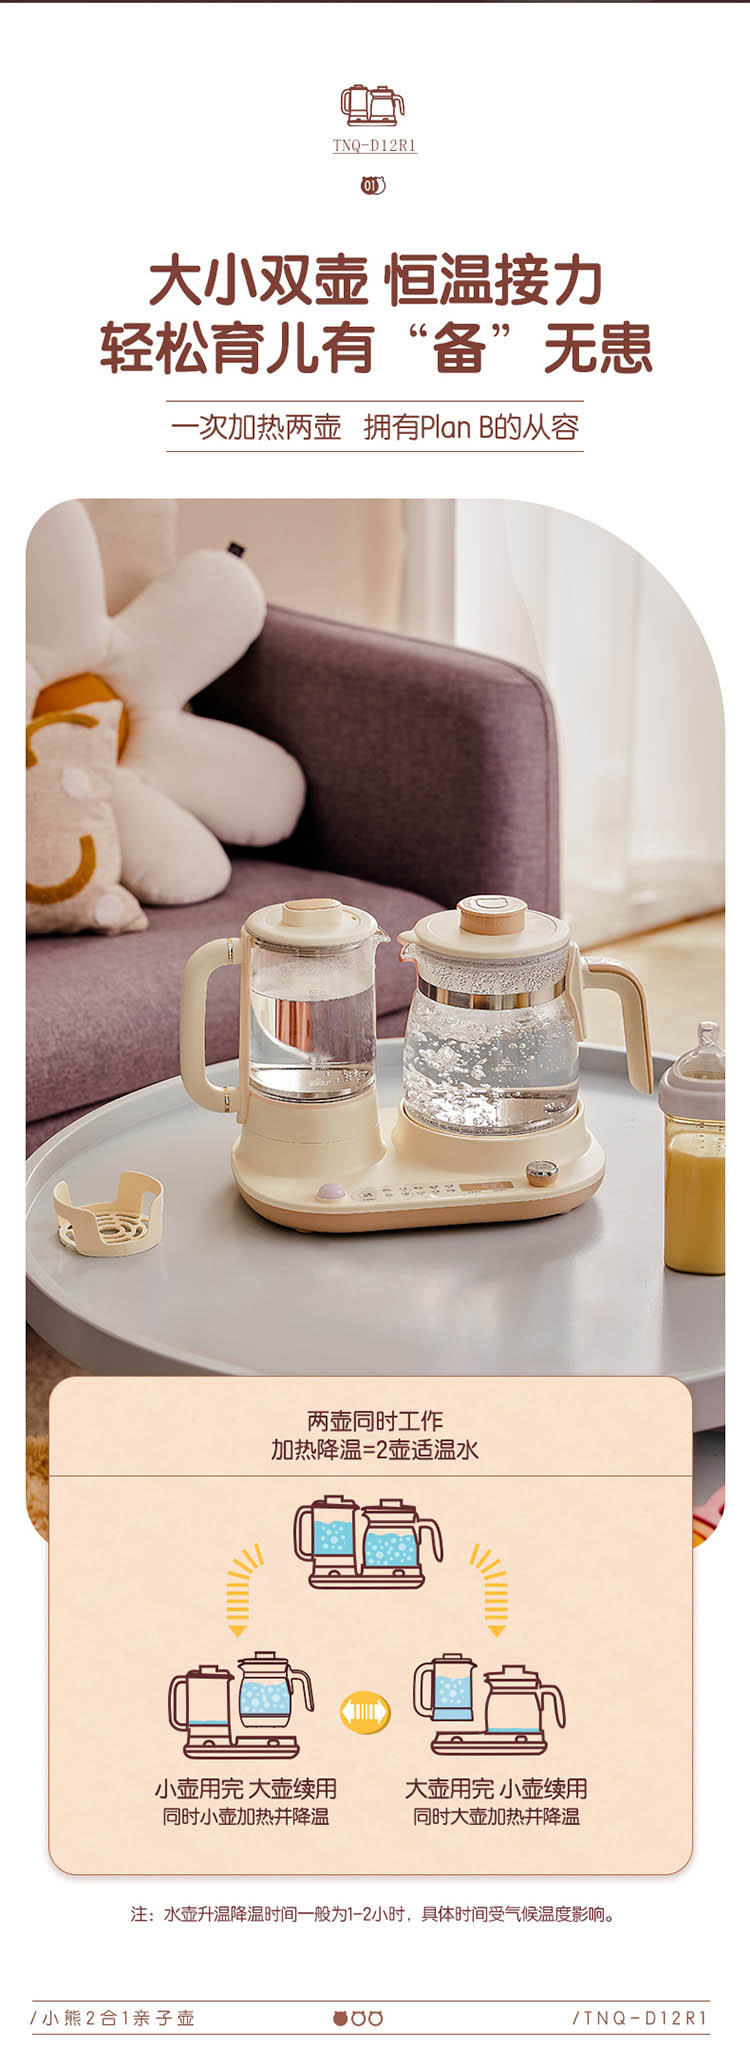 小熊/BEAR 恒温水壶调奶器1.2L+0.6温奶器多功能婴儿冲泡奶粉养生壶可续杯TNQ-D12R1